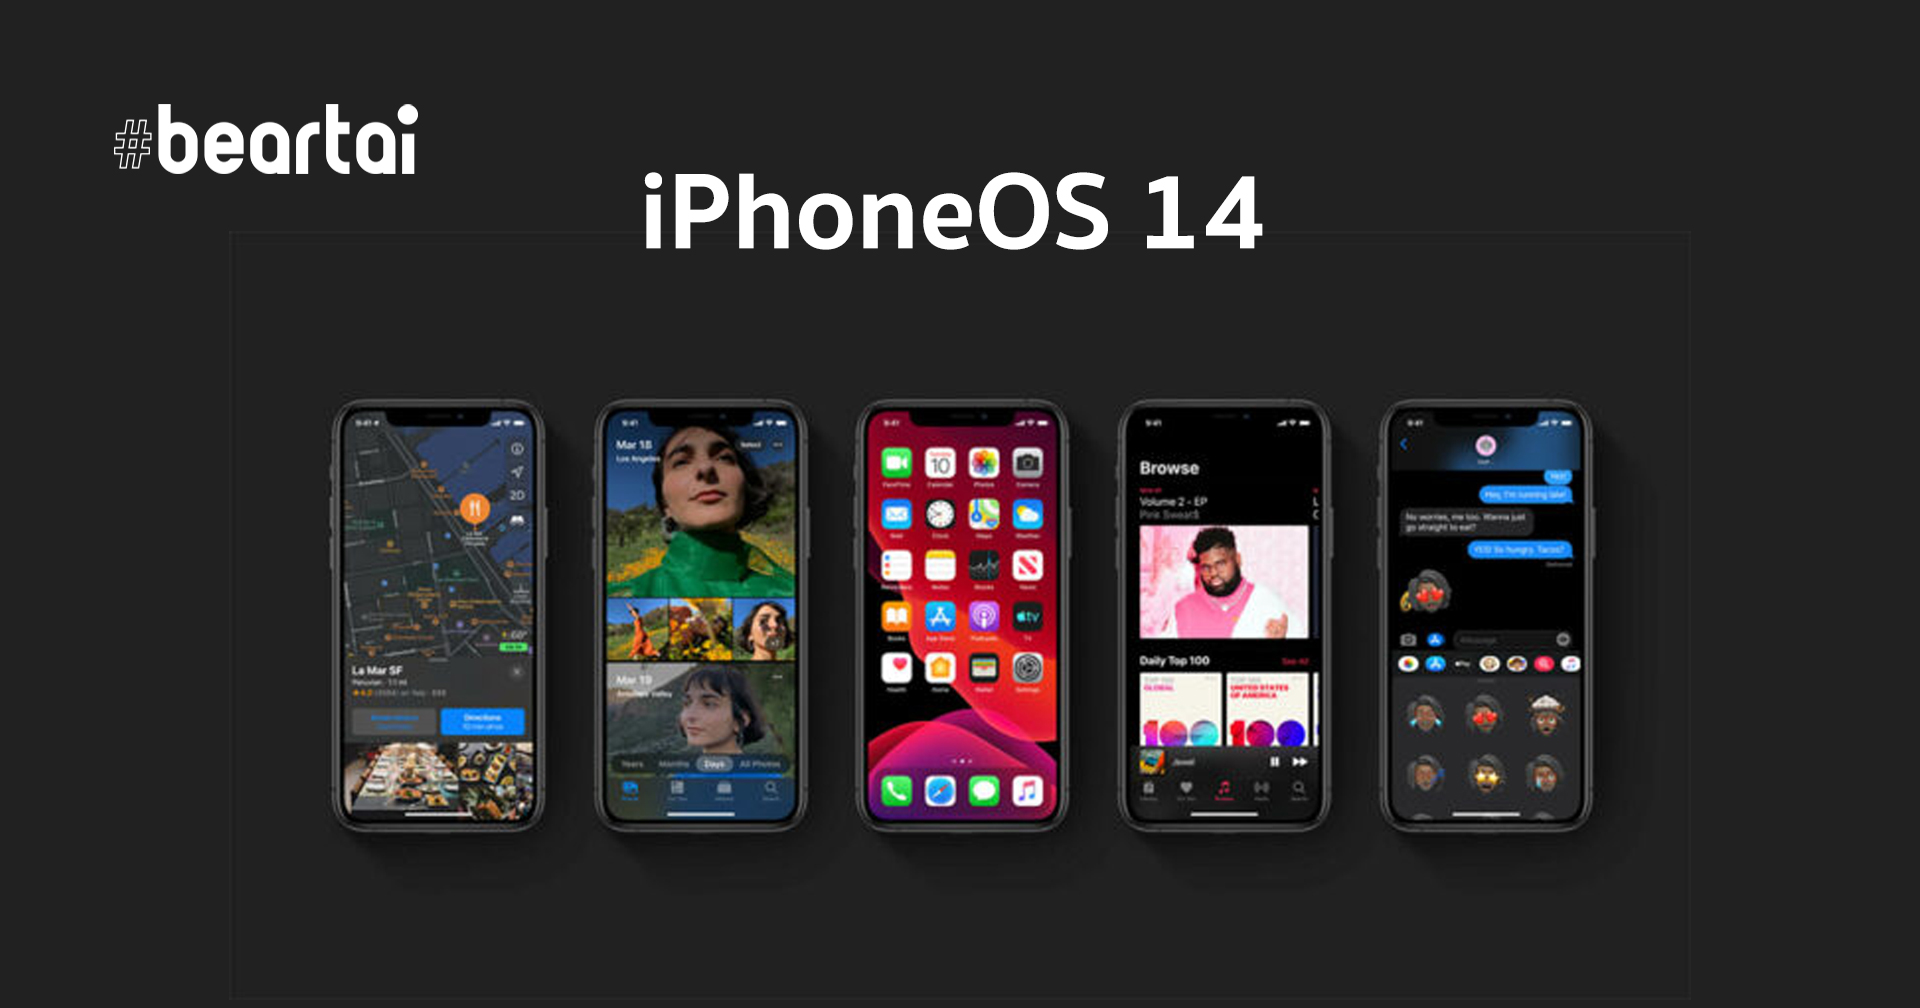 (ข่าวลือ) คอนเฟิร์มชื่อใหม่ พร้อมหลุดรายชื่ออุปกรณ์ที่รองรับ “iPhoneOS14” iPhone 6s และ iPhone SE (Gen 1) ยังได้ไปต่อ